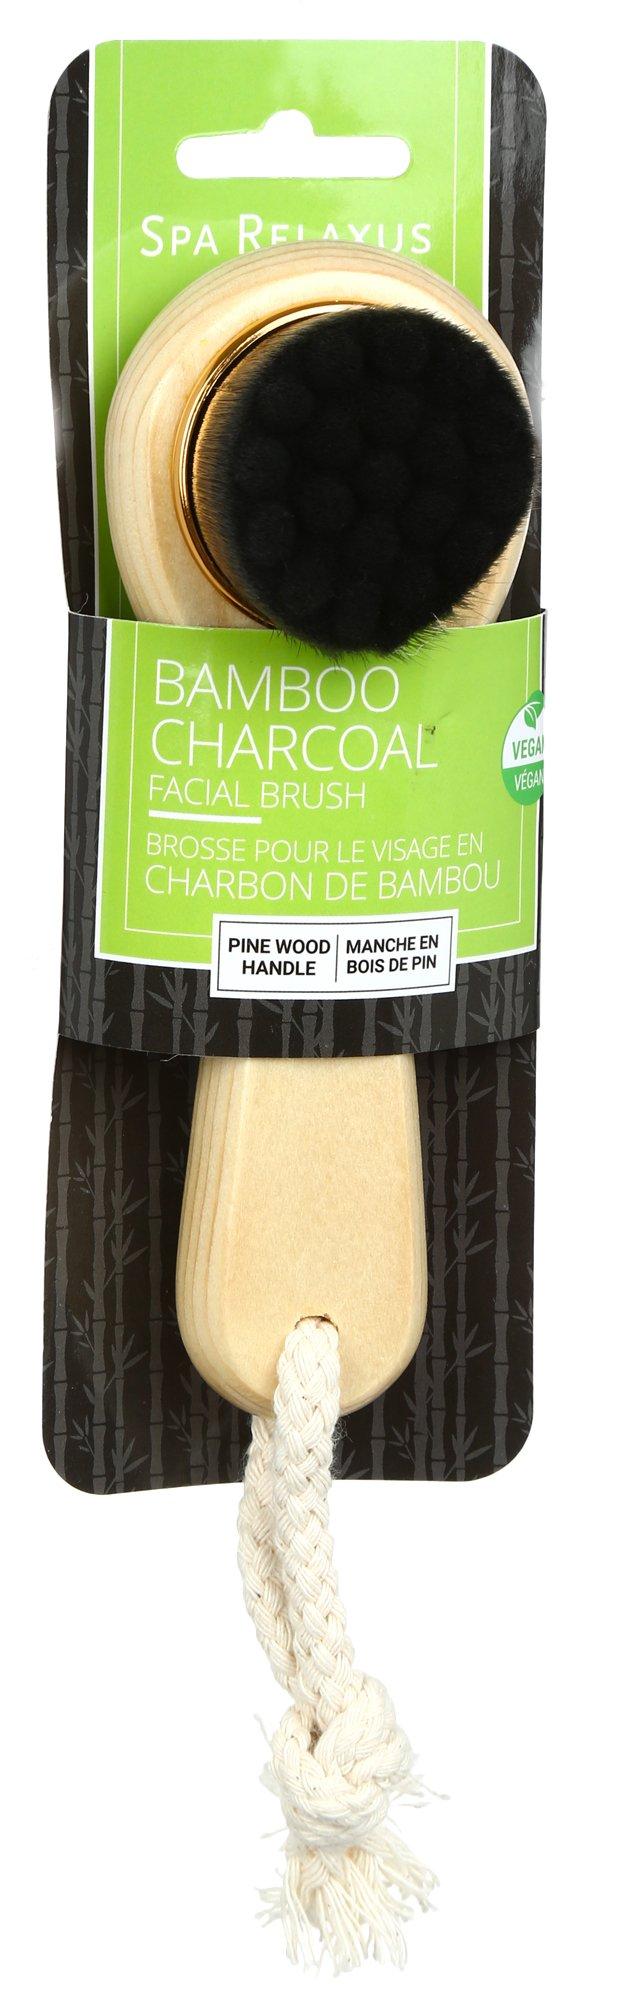 Bamboo Charcoal Facial Brush